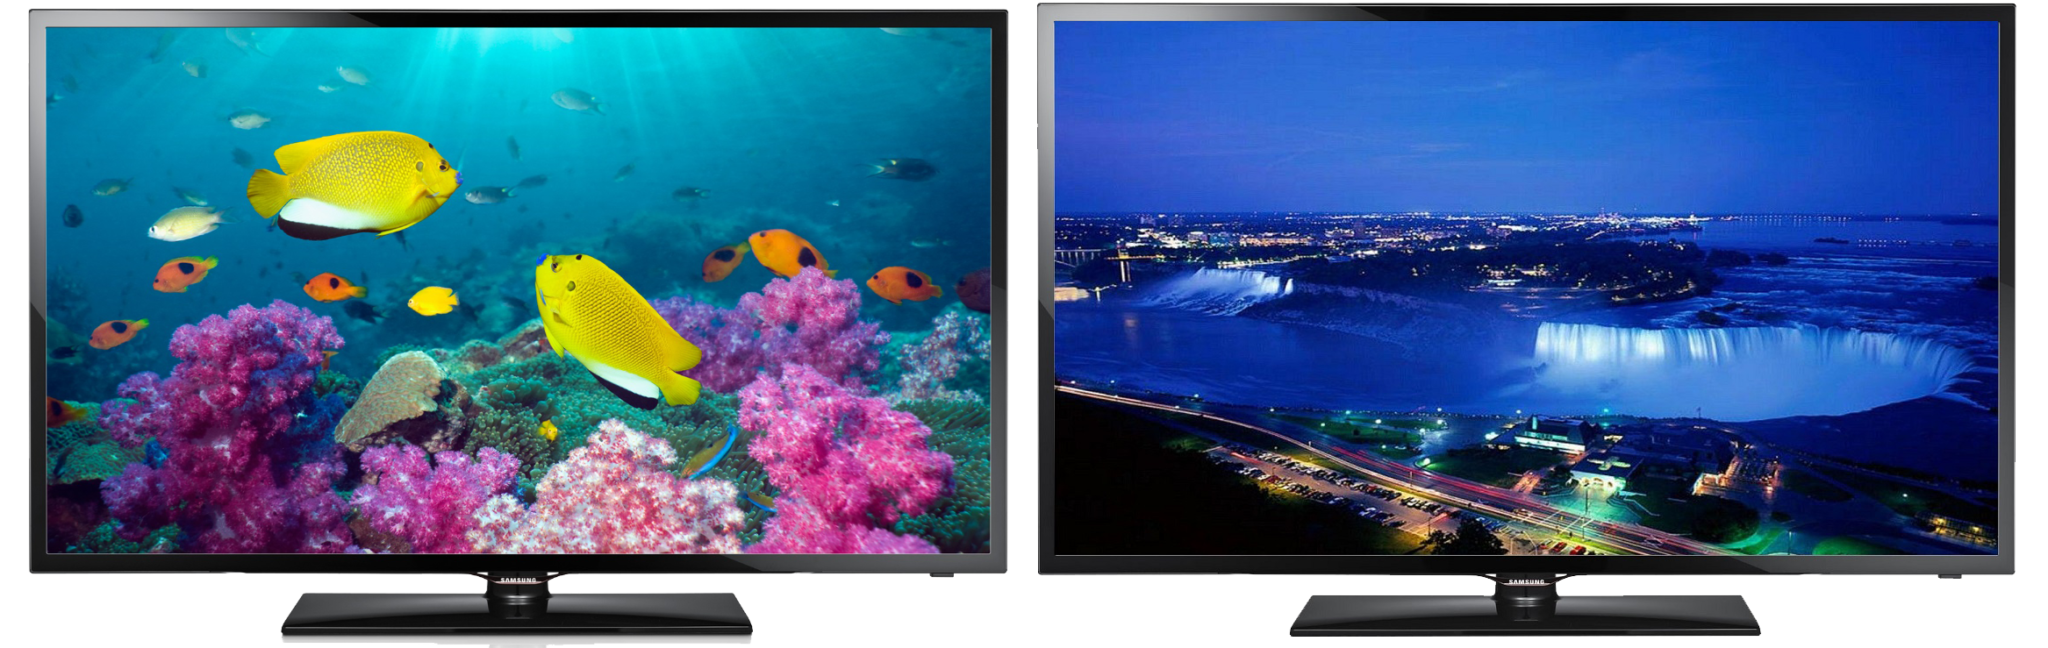 Samsung 32F5000 Full HD LED Tv -2- ilovesamsung